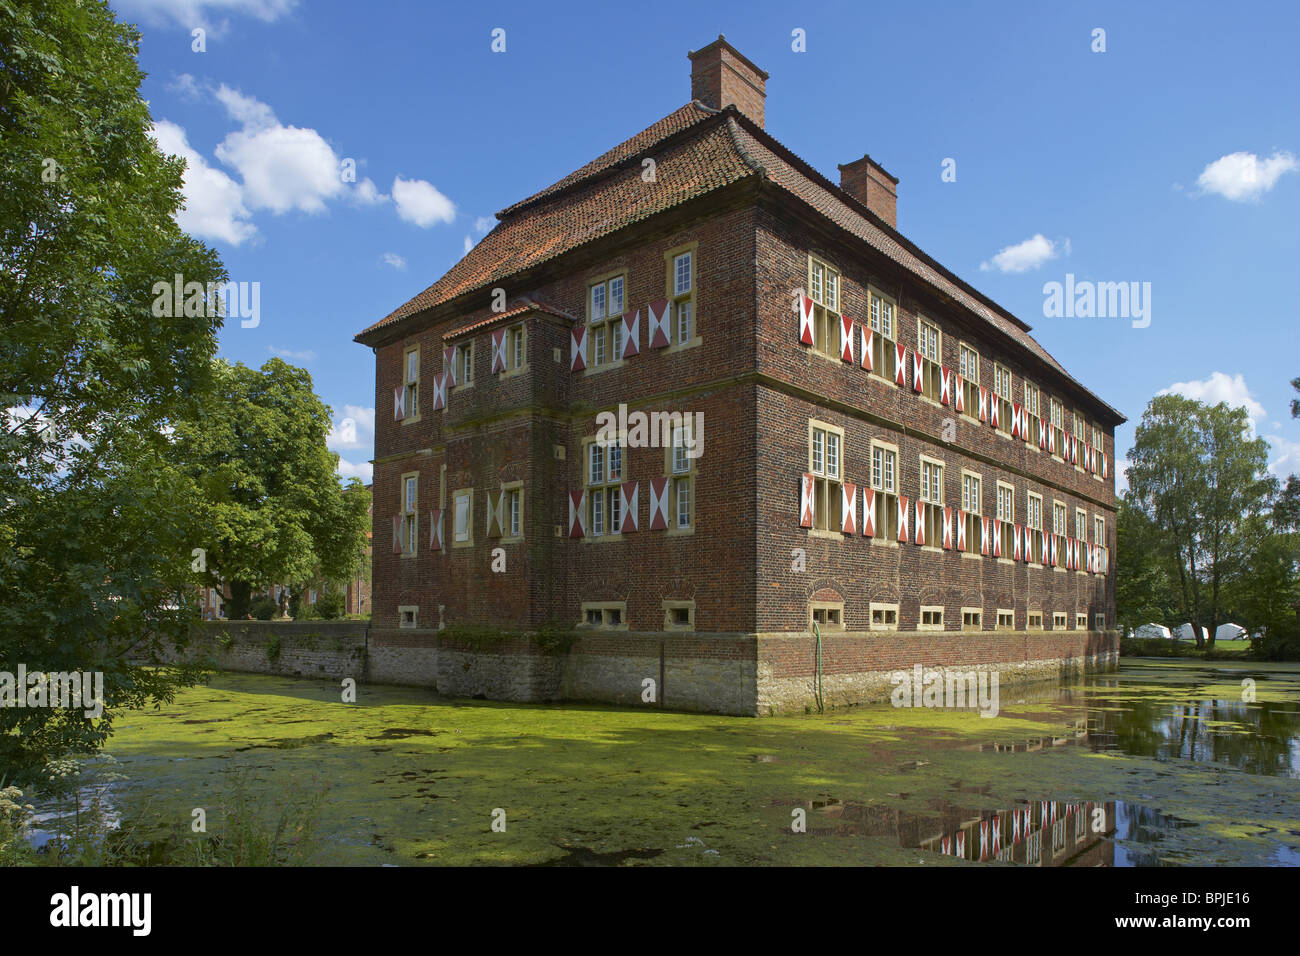 Ancien château Oberwerries (17ème siècle), Euskirchen, Ruhr, Nordrhein-Westfalen, Germany, Europe Banque D'Images